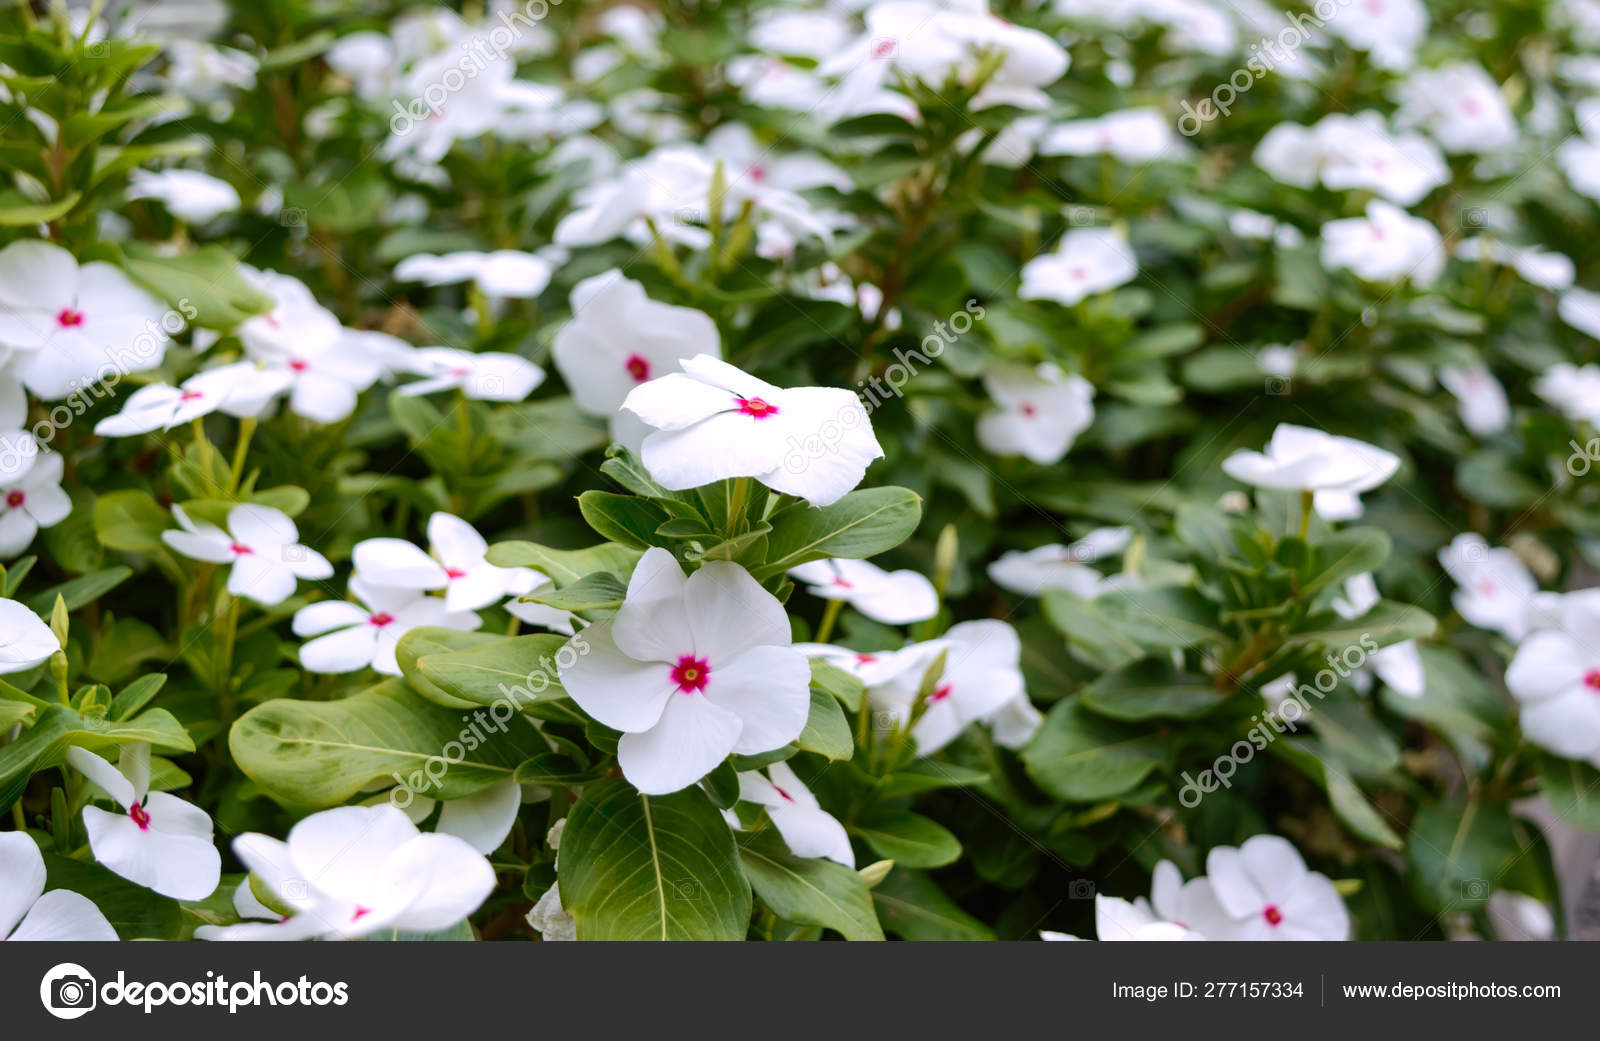 White Flowers Periwinkle Garden Beautiful Flower Beds Flowering Shrubs Stock Photo C Iaroshenko Marina Gmail Com 277157334